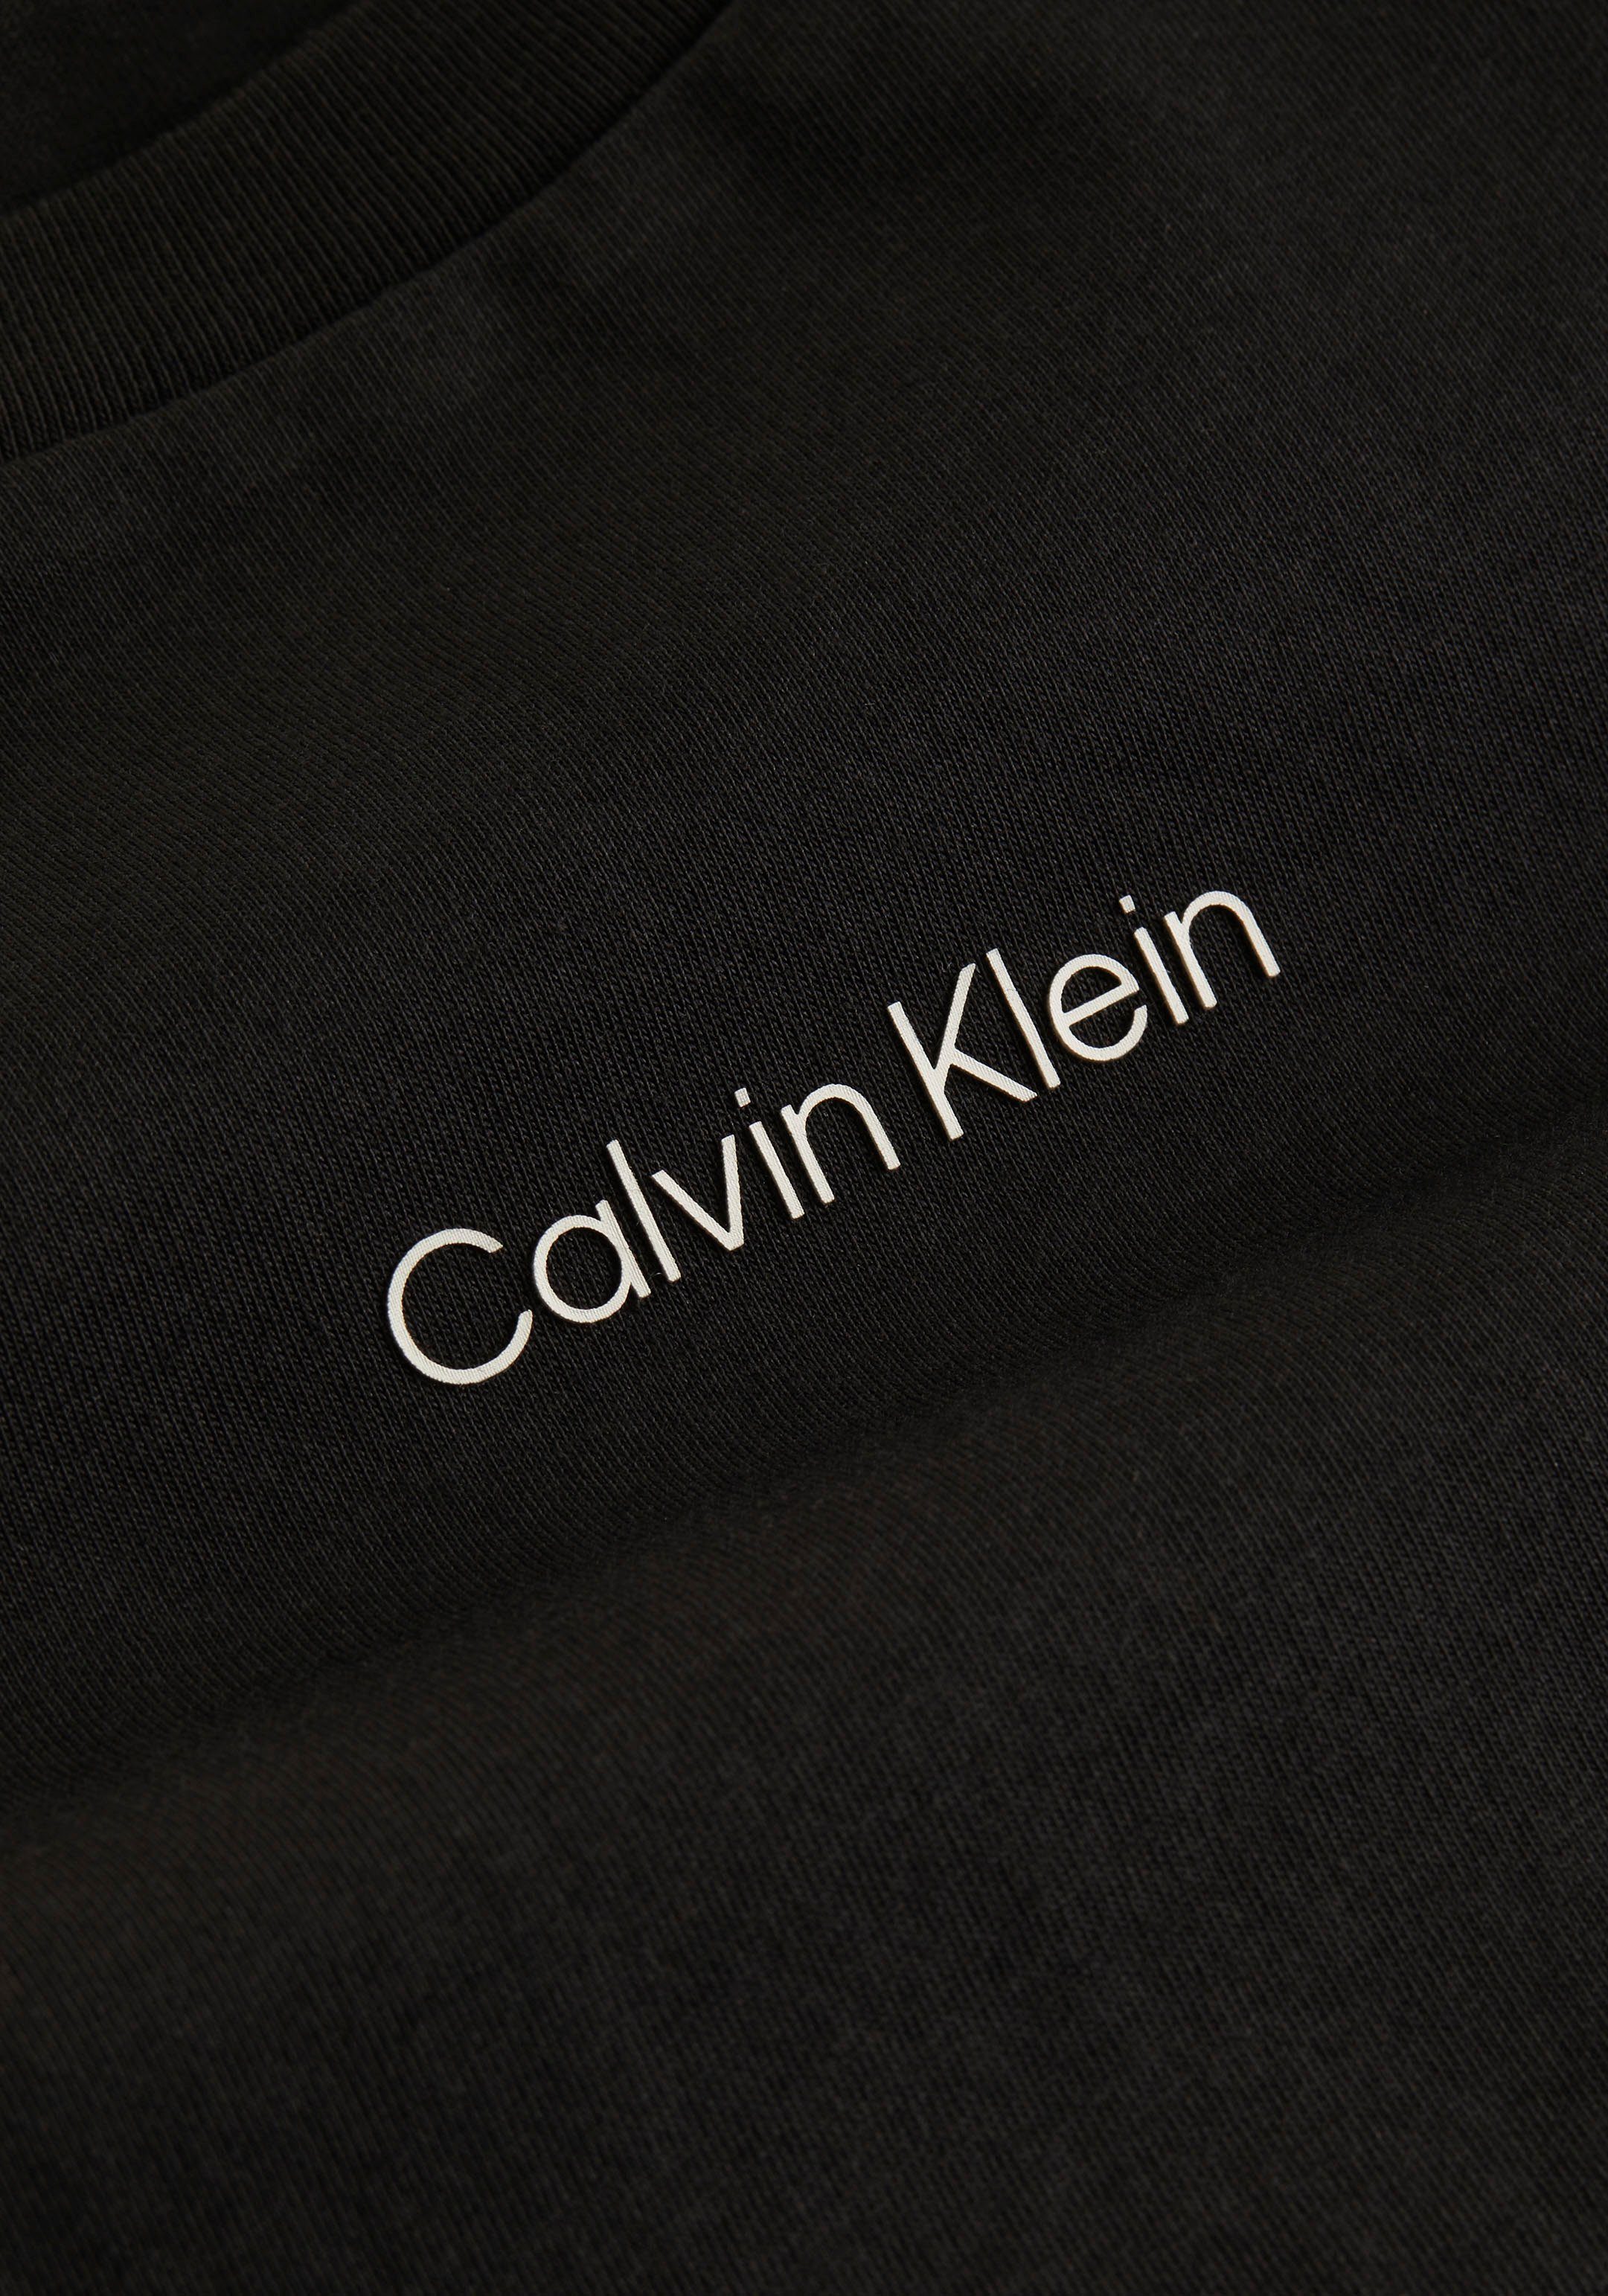 T-Shirt Klein reiner MICRO aus LOGO Calvin Baumwolle T-SHIRT Ck-Black